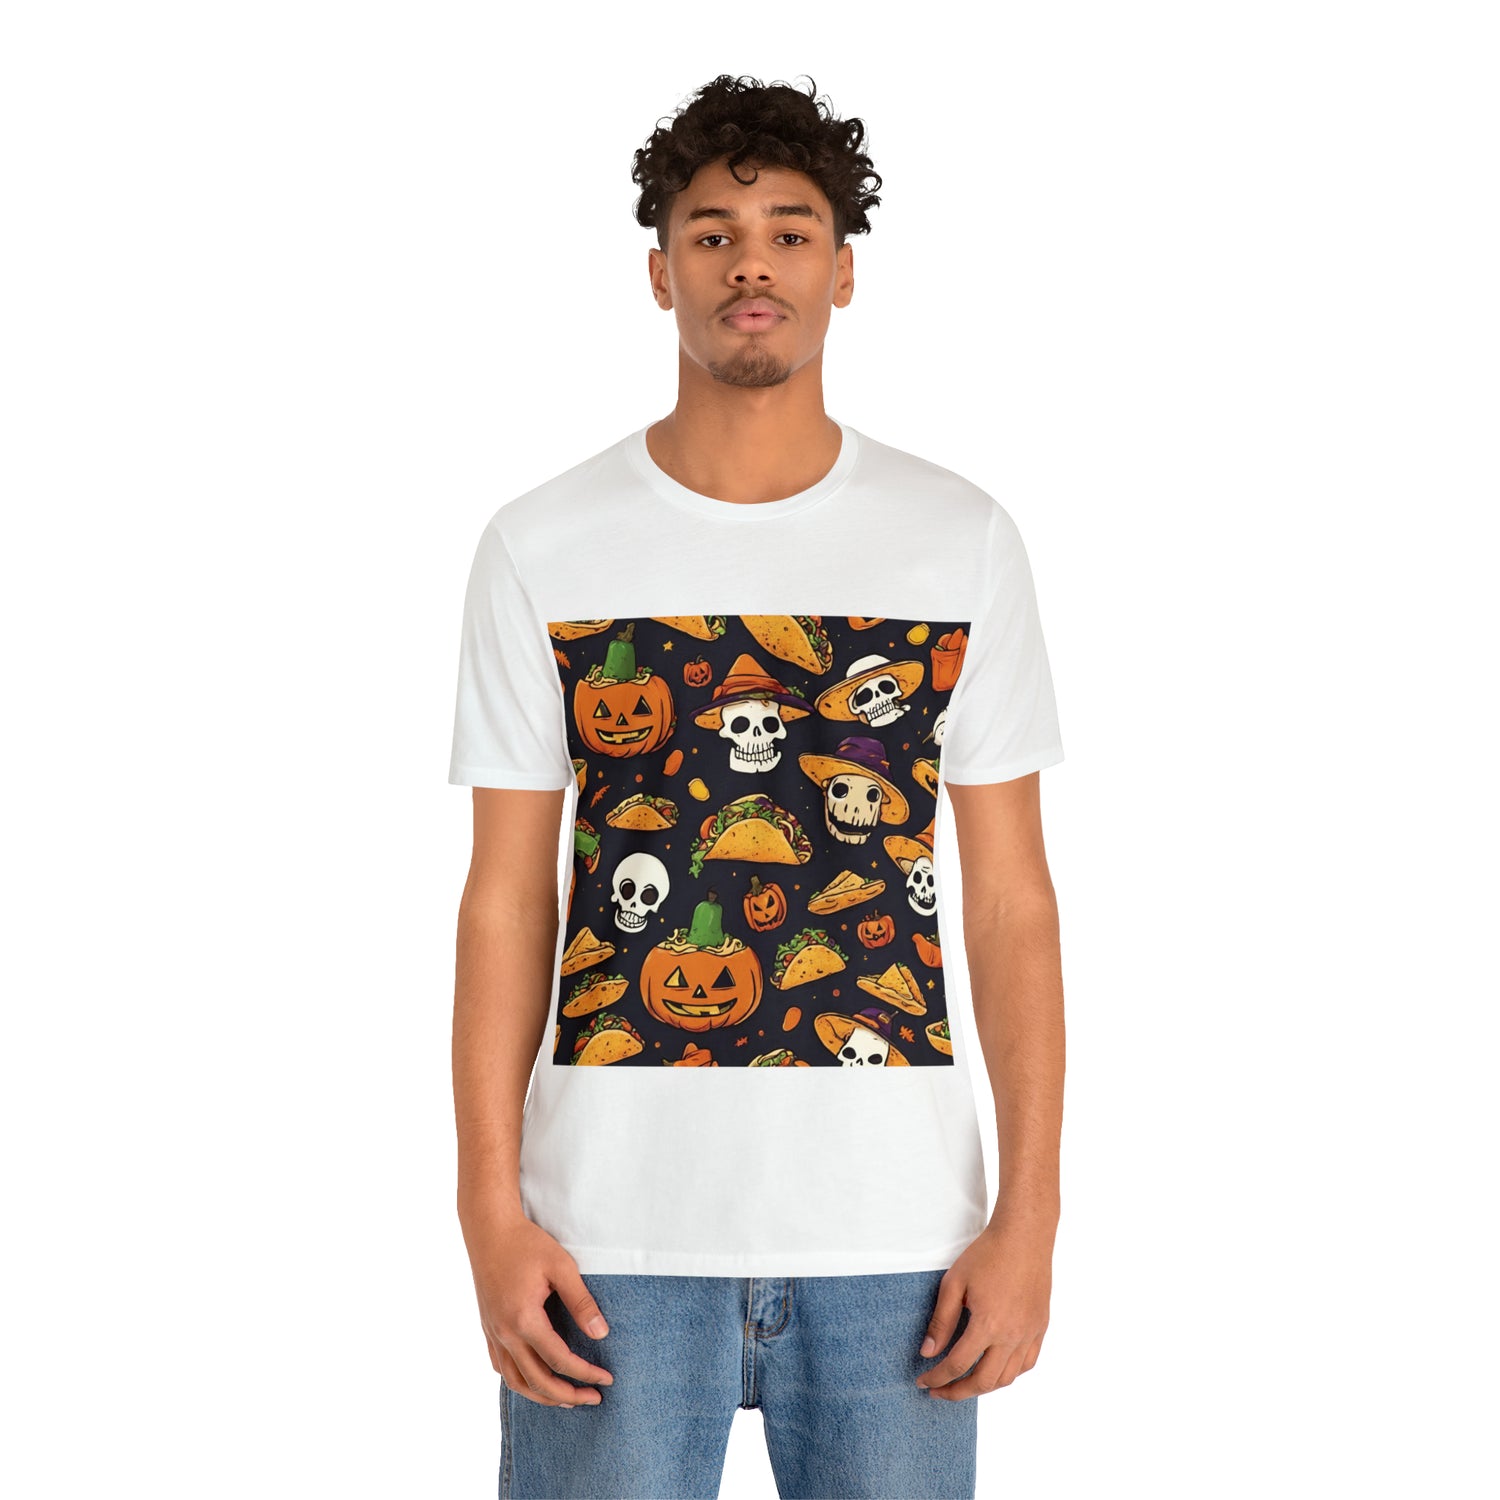 Tacos And Halloween T-Shirt | Halloween Gift Ideas T-Shirt Petrova Designs